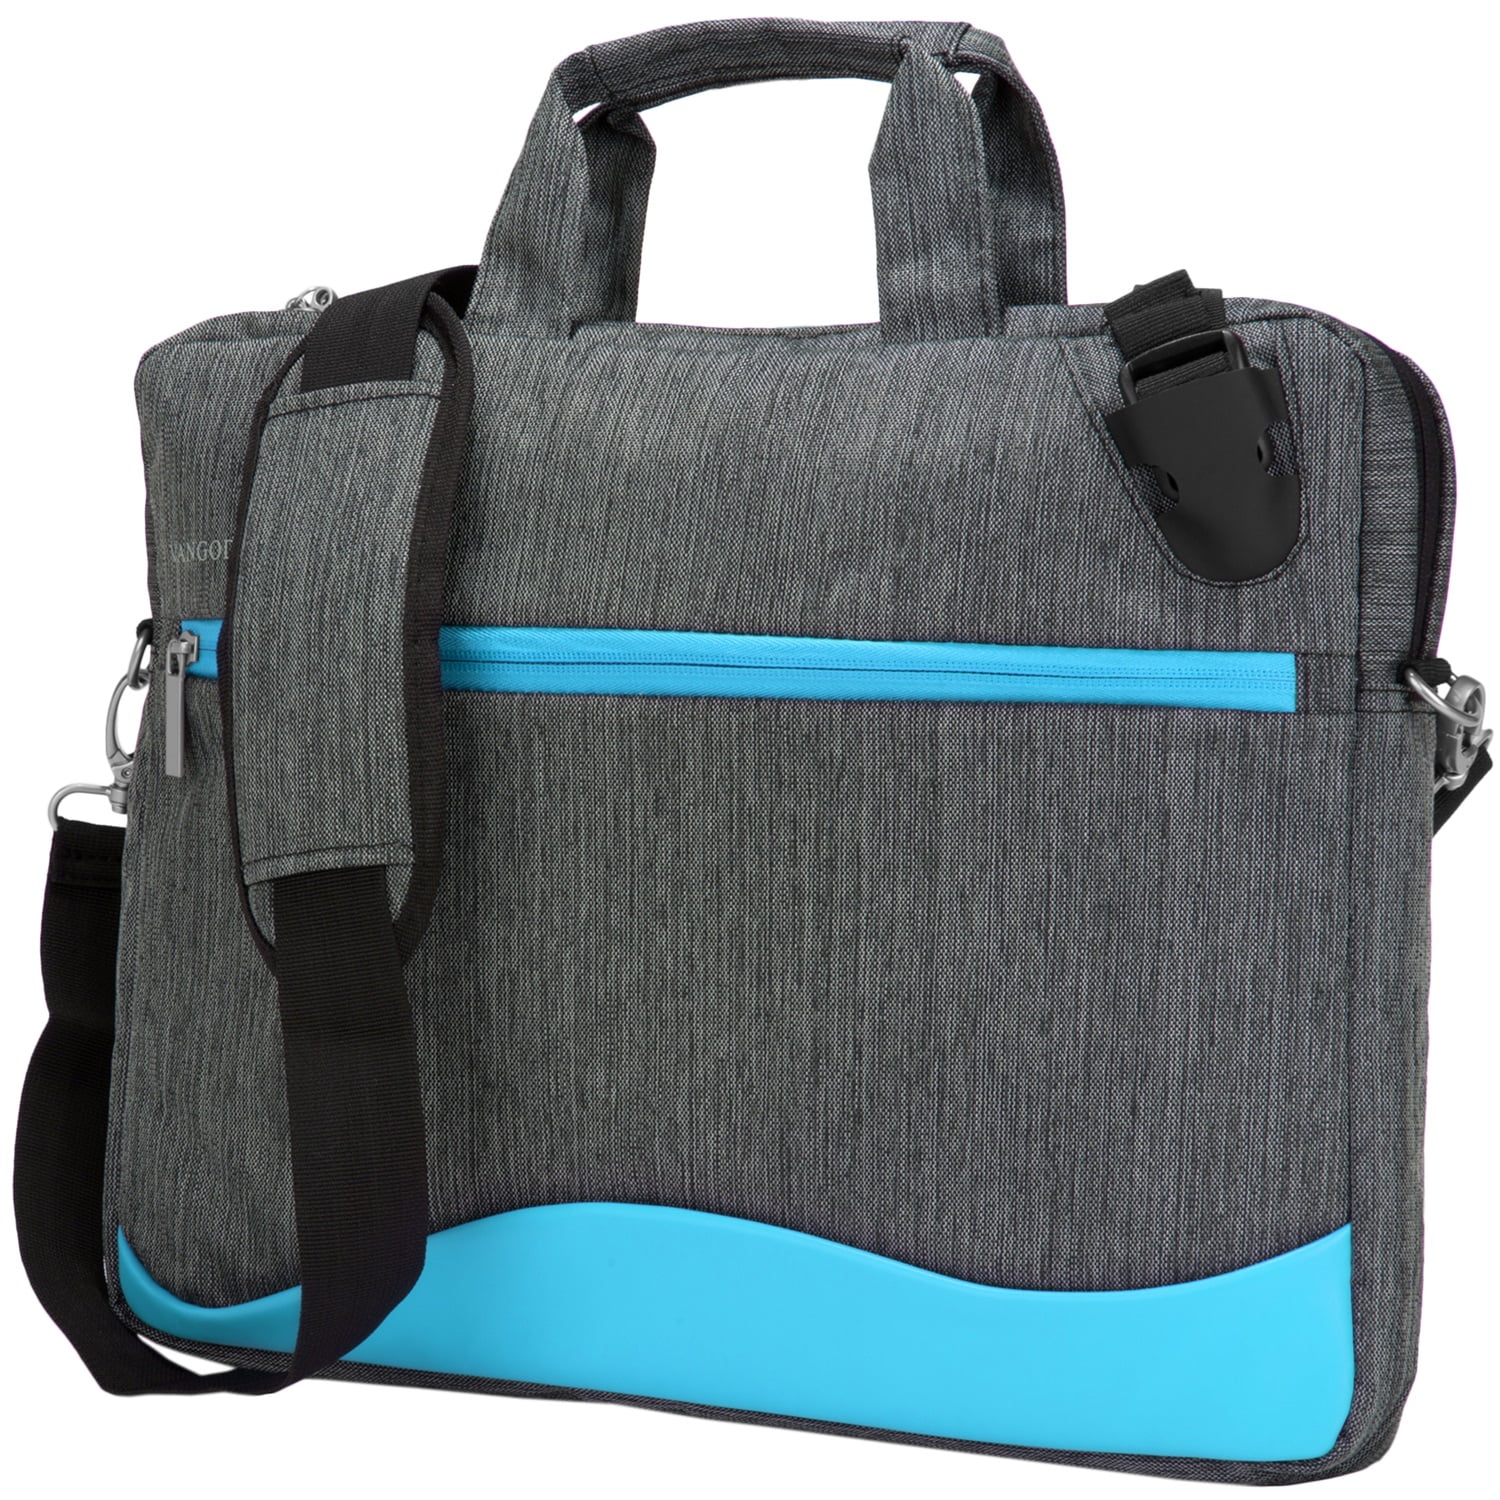 Color : Blue, Size : 11.6inch Laptop Briefcase Briefcase Shoulder Messenger Bag Waterproof Laptop Bag Satchel Tablet Business Carrying Tote Bag Laptop Multifunction Bag Unisex Office Bag